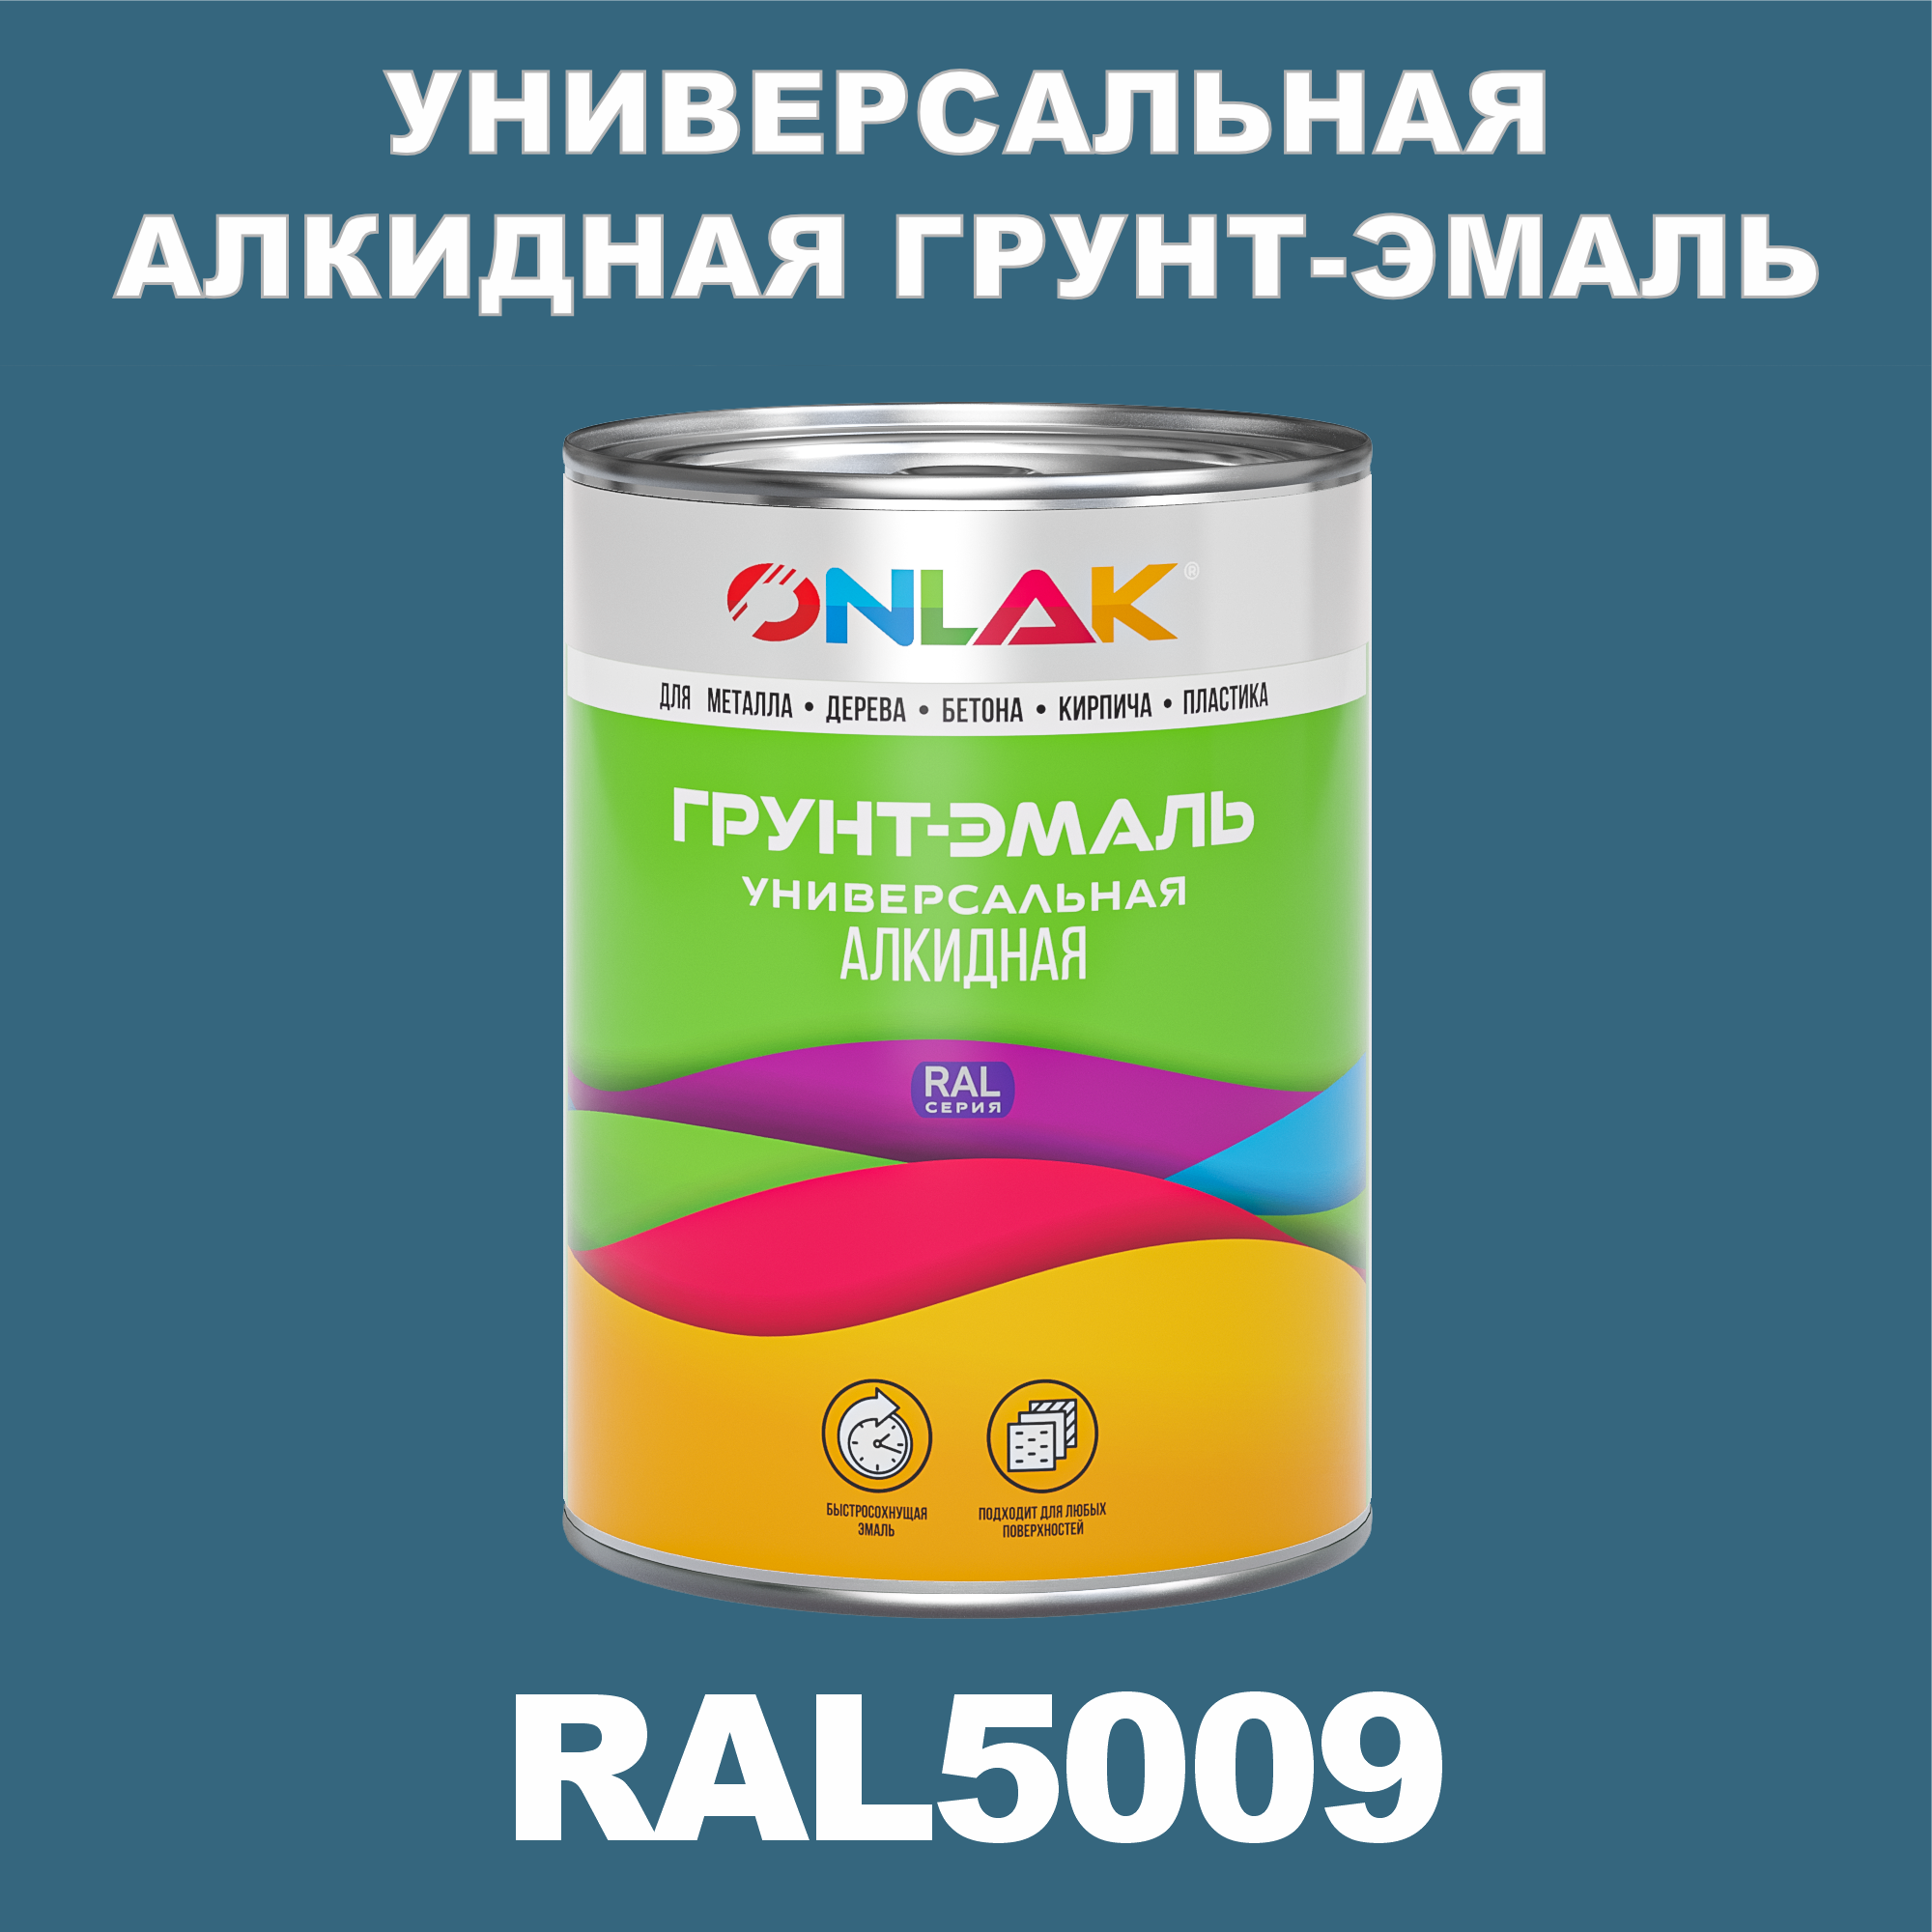 Грунт-эмаль ONLAK 1К RAL5009 антикоррозионная алкидная по металлу по ржавчине 1 кг грунт эмаль neomid по ржавчине быстросохнущая алкидная серая 0 9 кг